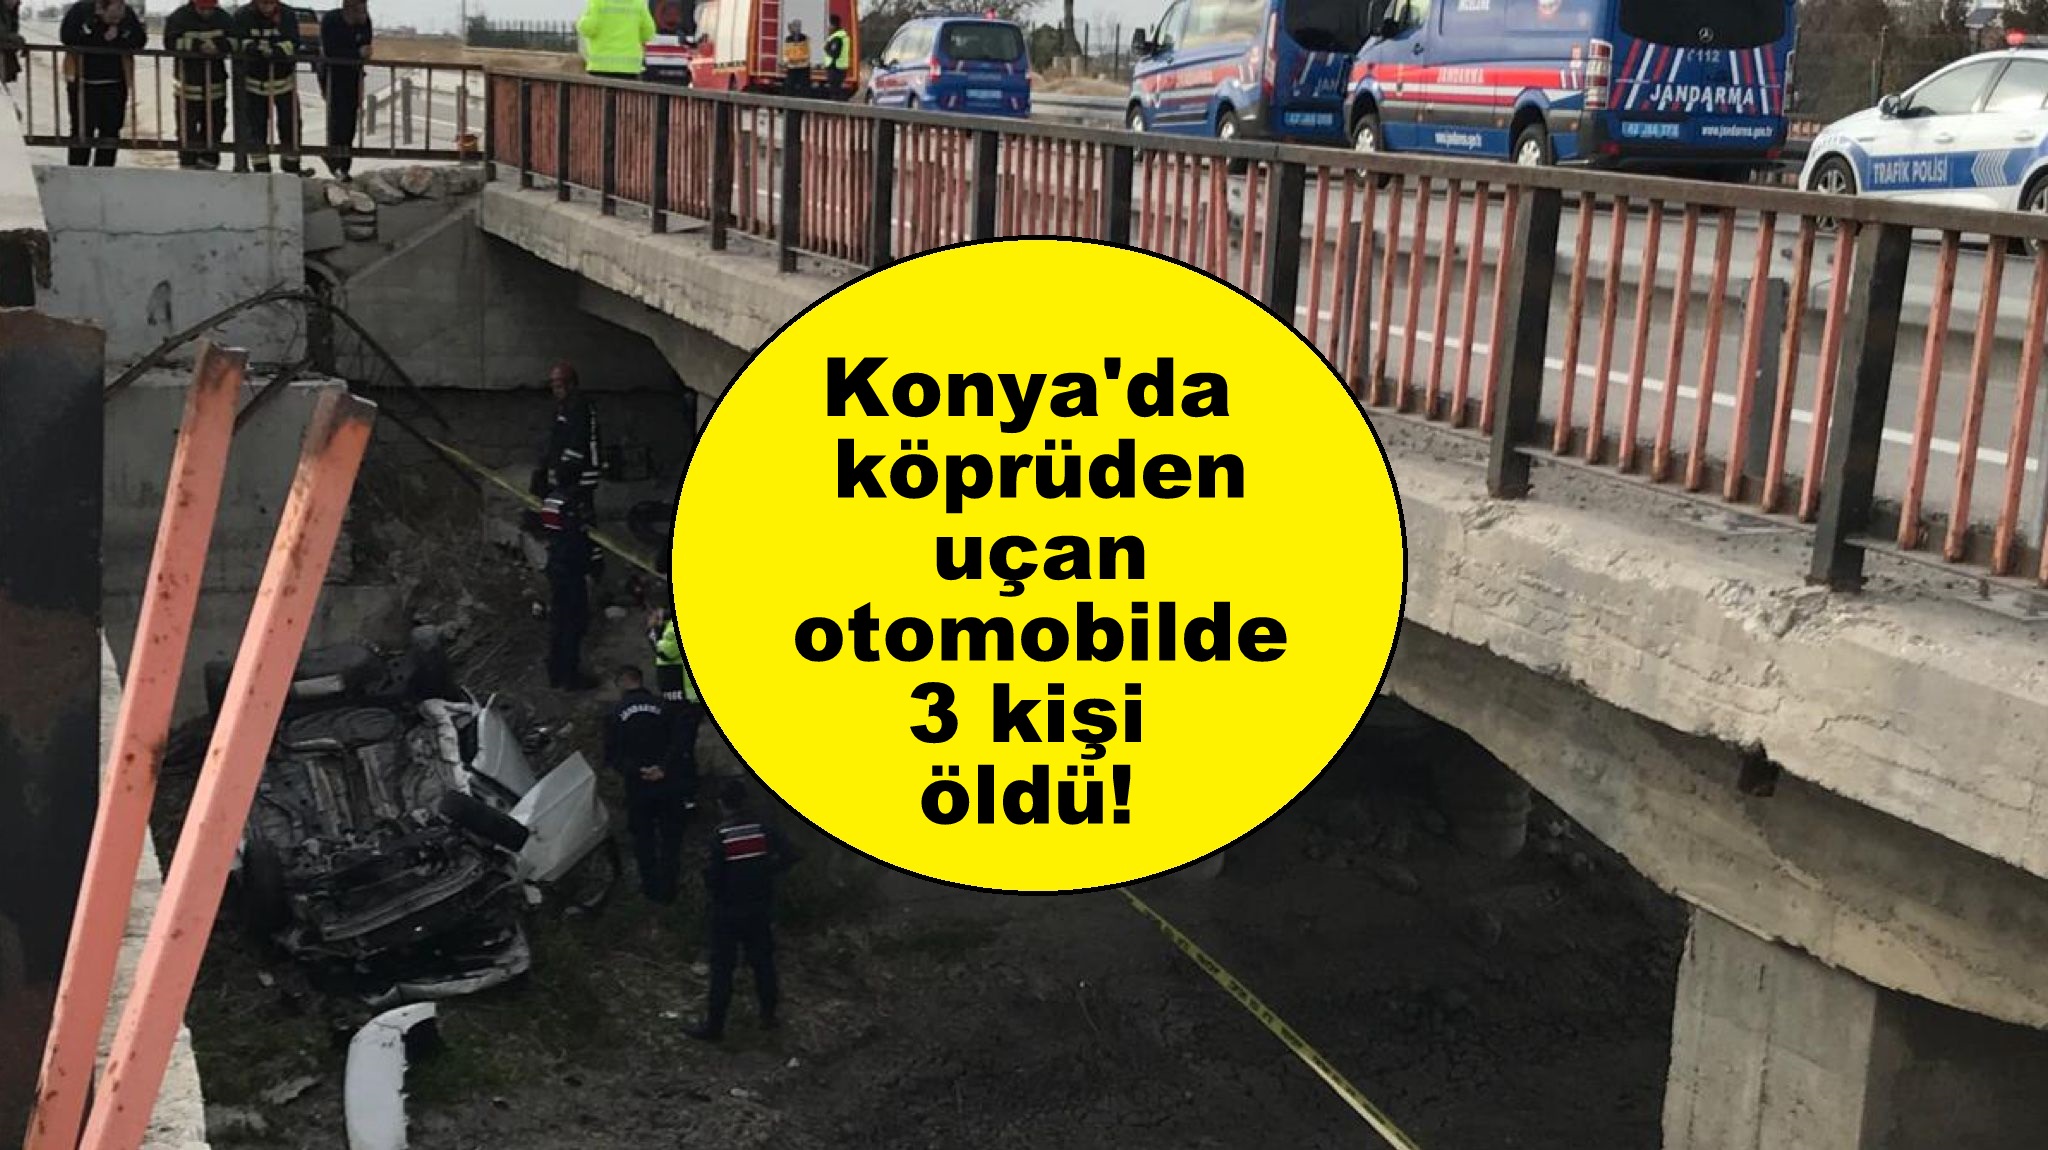 Konya'da köprüden uçan otomobilde 3 kişi öldü!